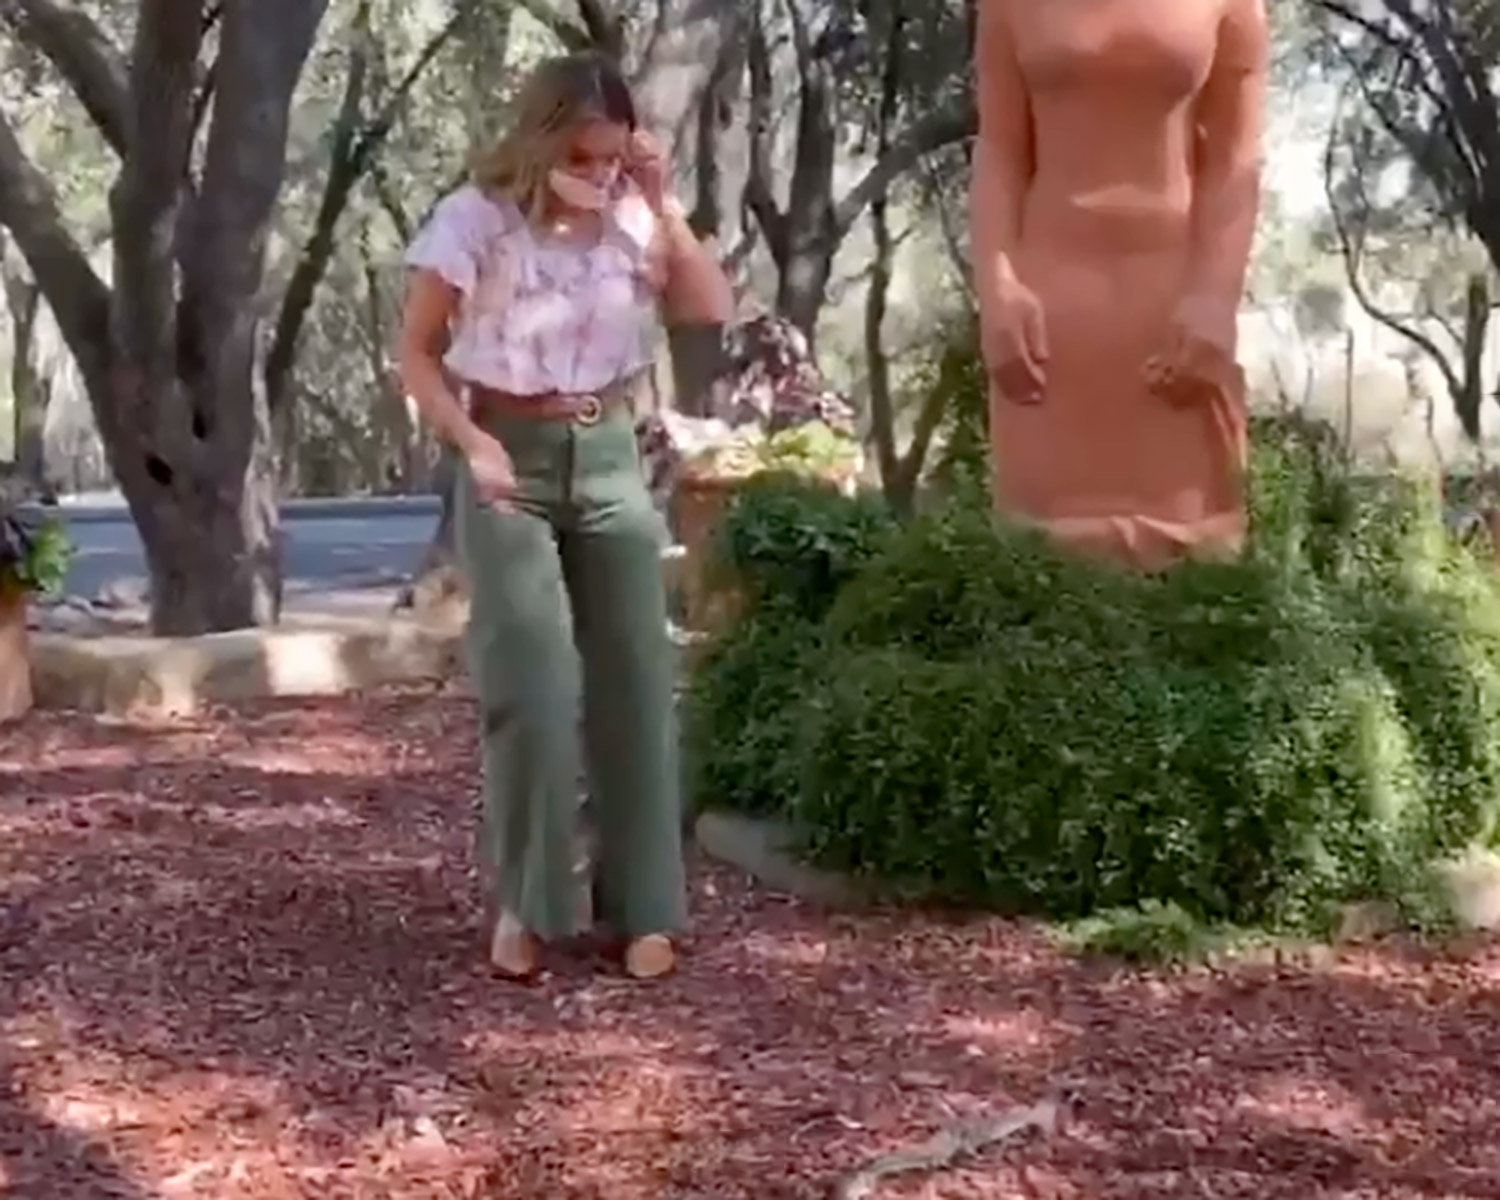 A atriz Jessica Alba levou um susto ao encontrar cobra perto de estátua durante passeio no parque